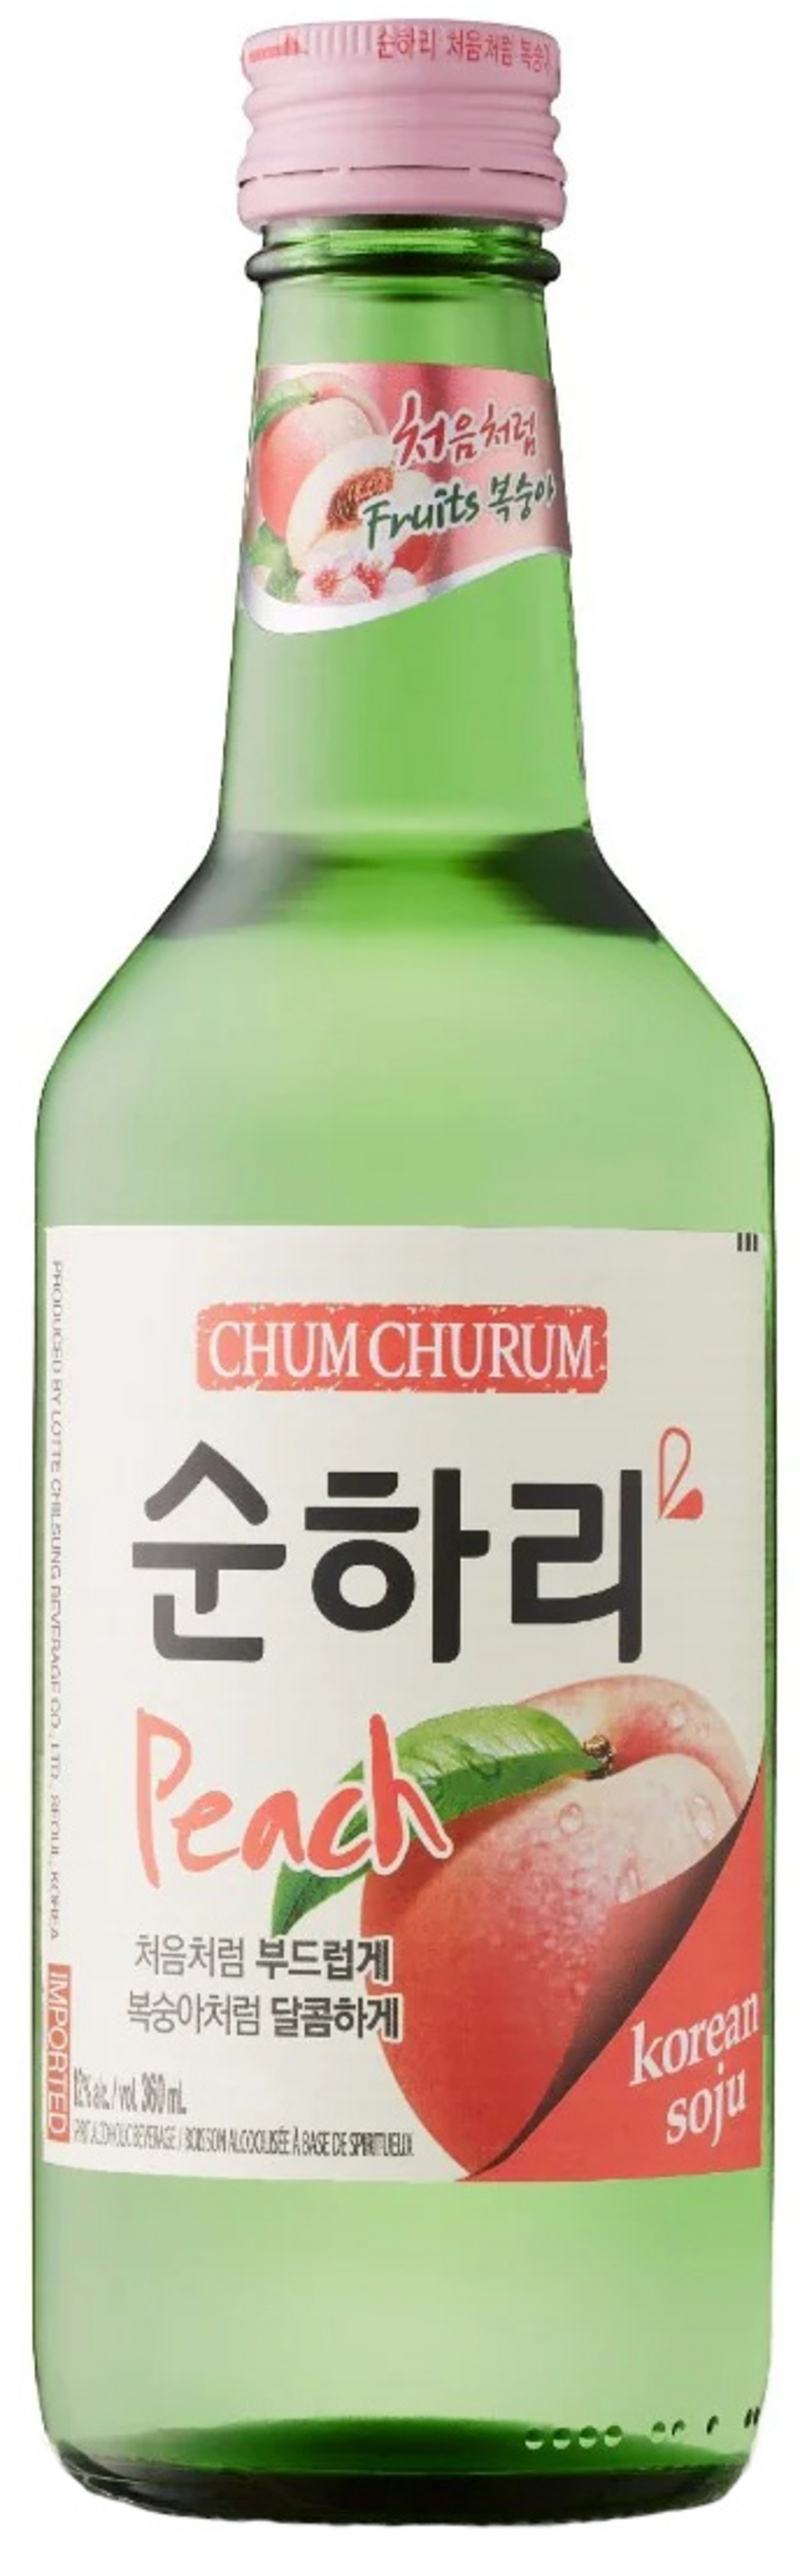 Soju - Pfirsich - Chum Churum - Das Original aus Korea von Lotte [EINWEG]